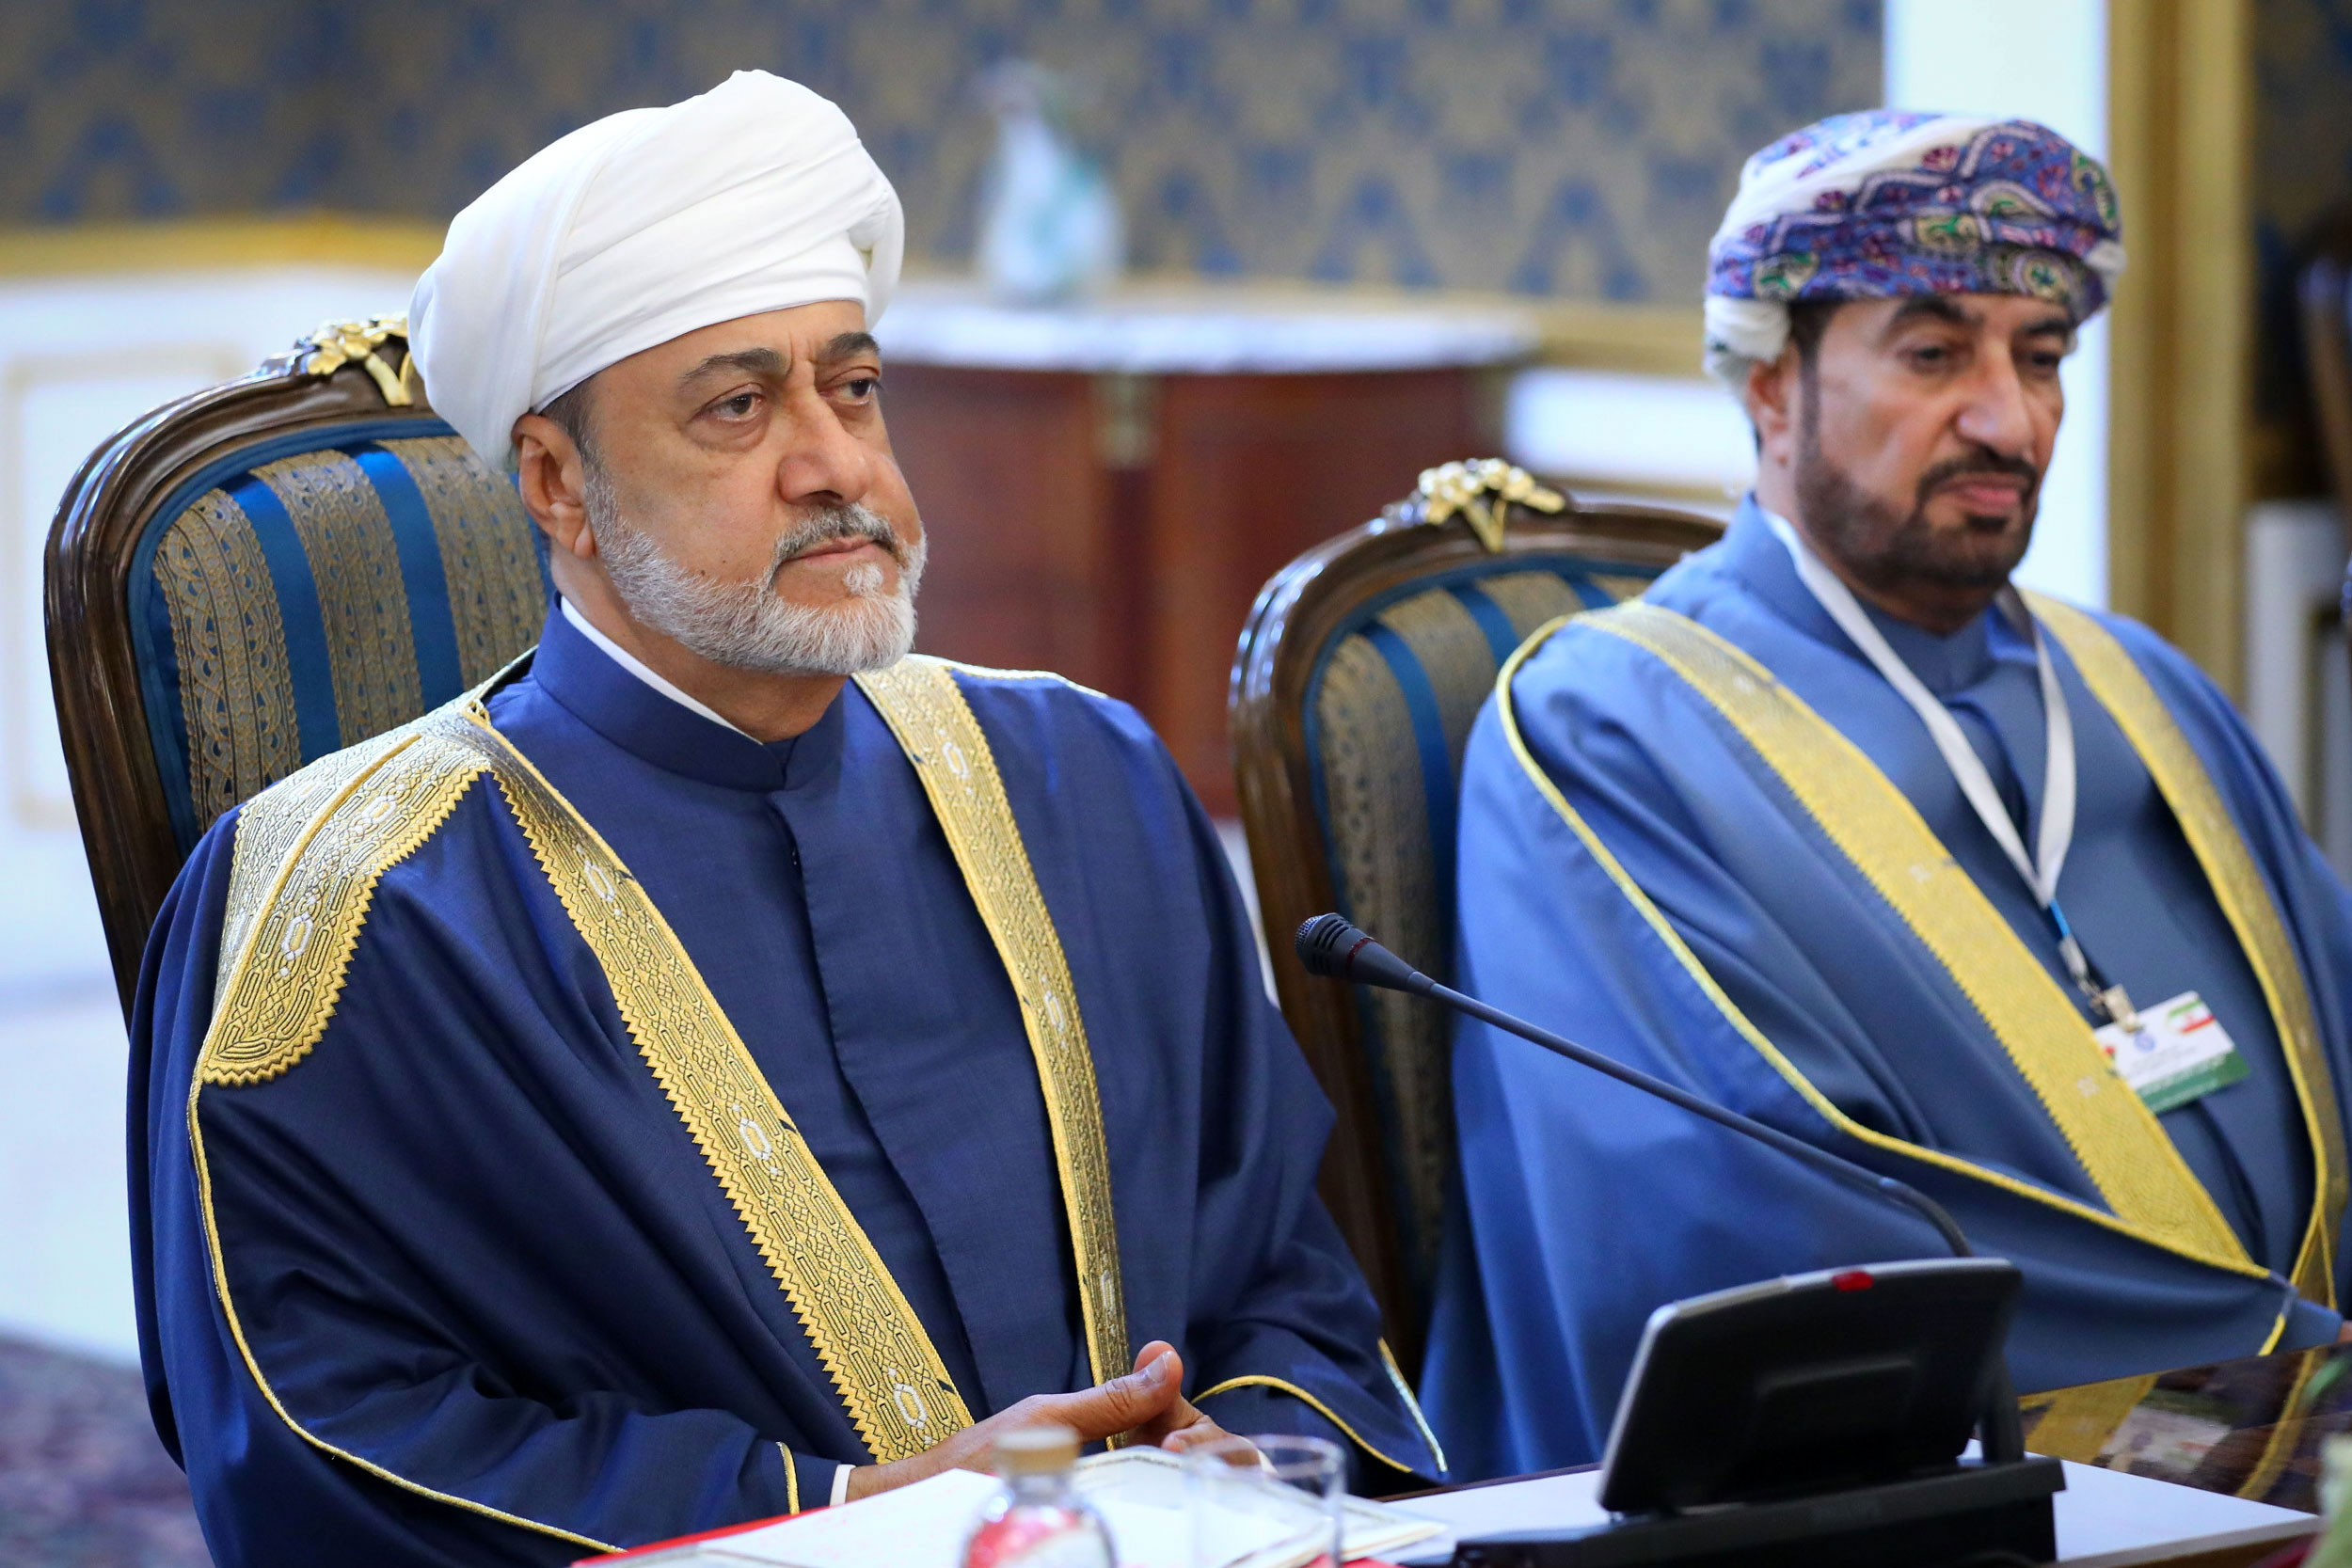 تیپ جالب پادشاه عمان در دیدار با رییسی + عکس